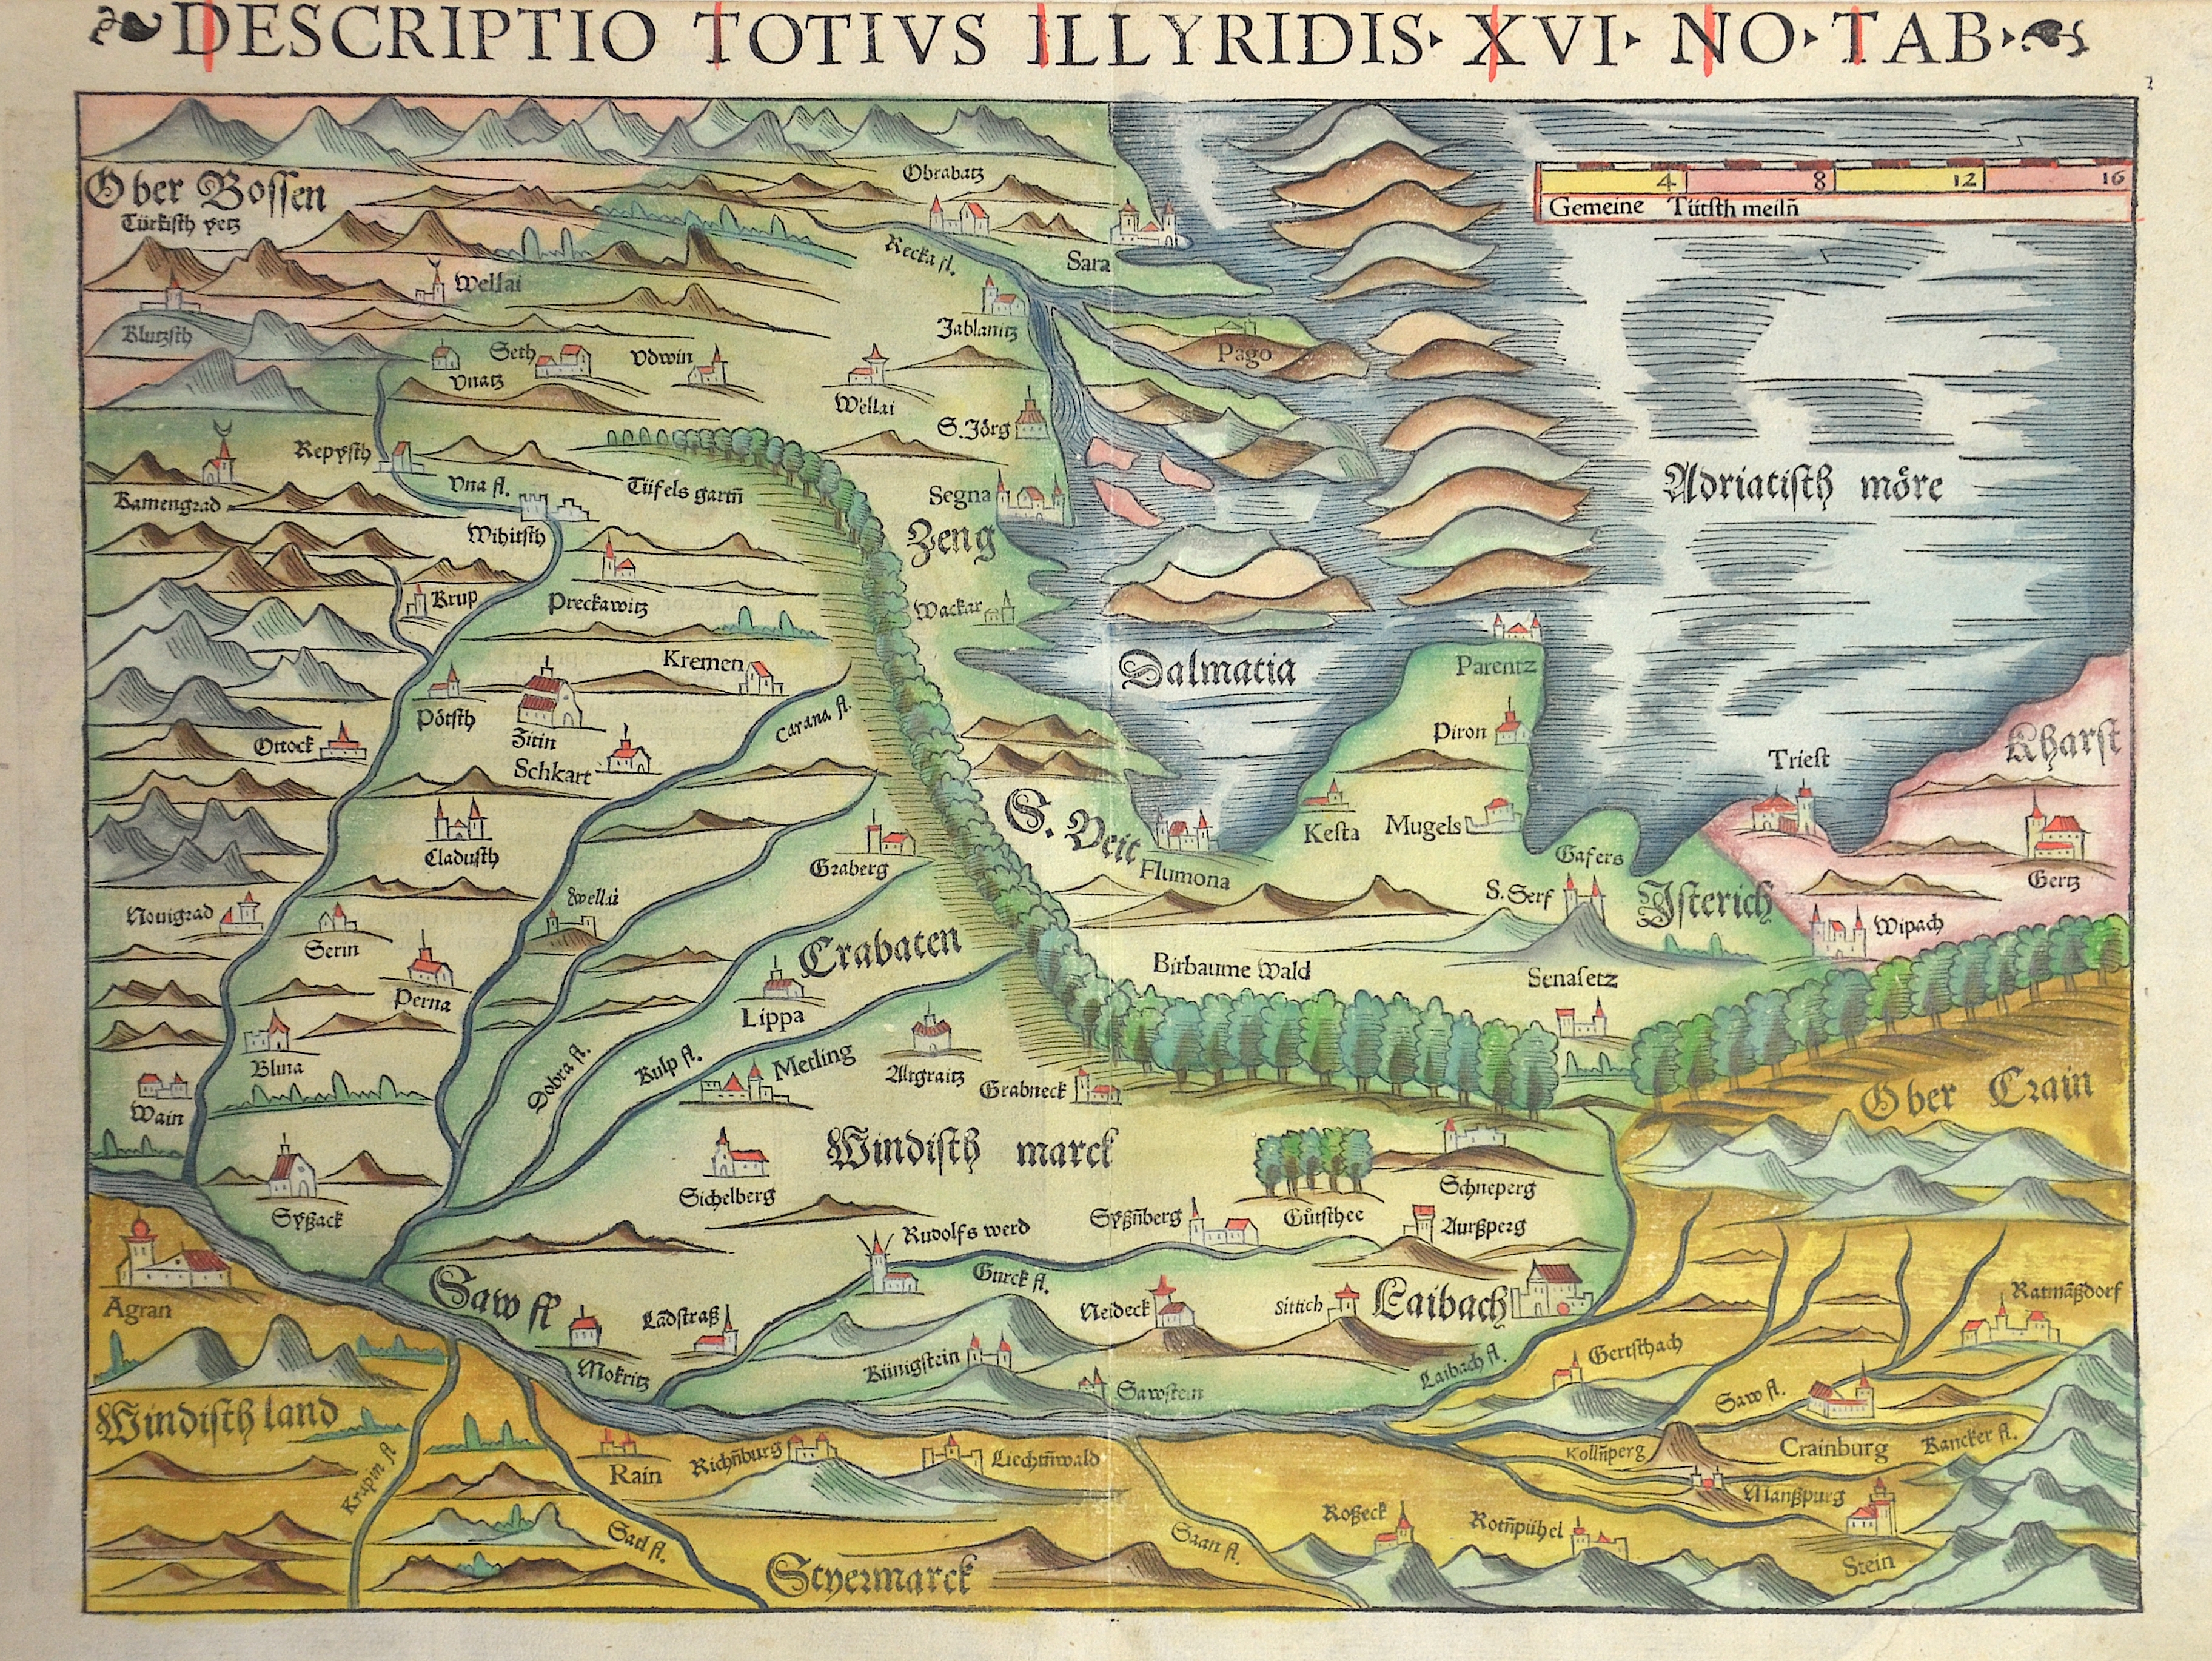 Ptolemy/Münster Sebastian Claudius Descriptio totius Illyrides XVI no tab